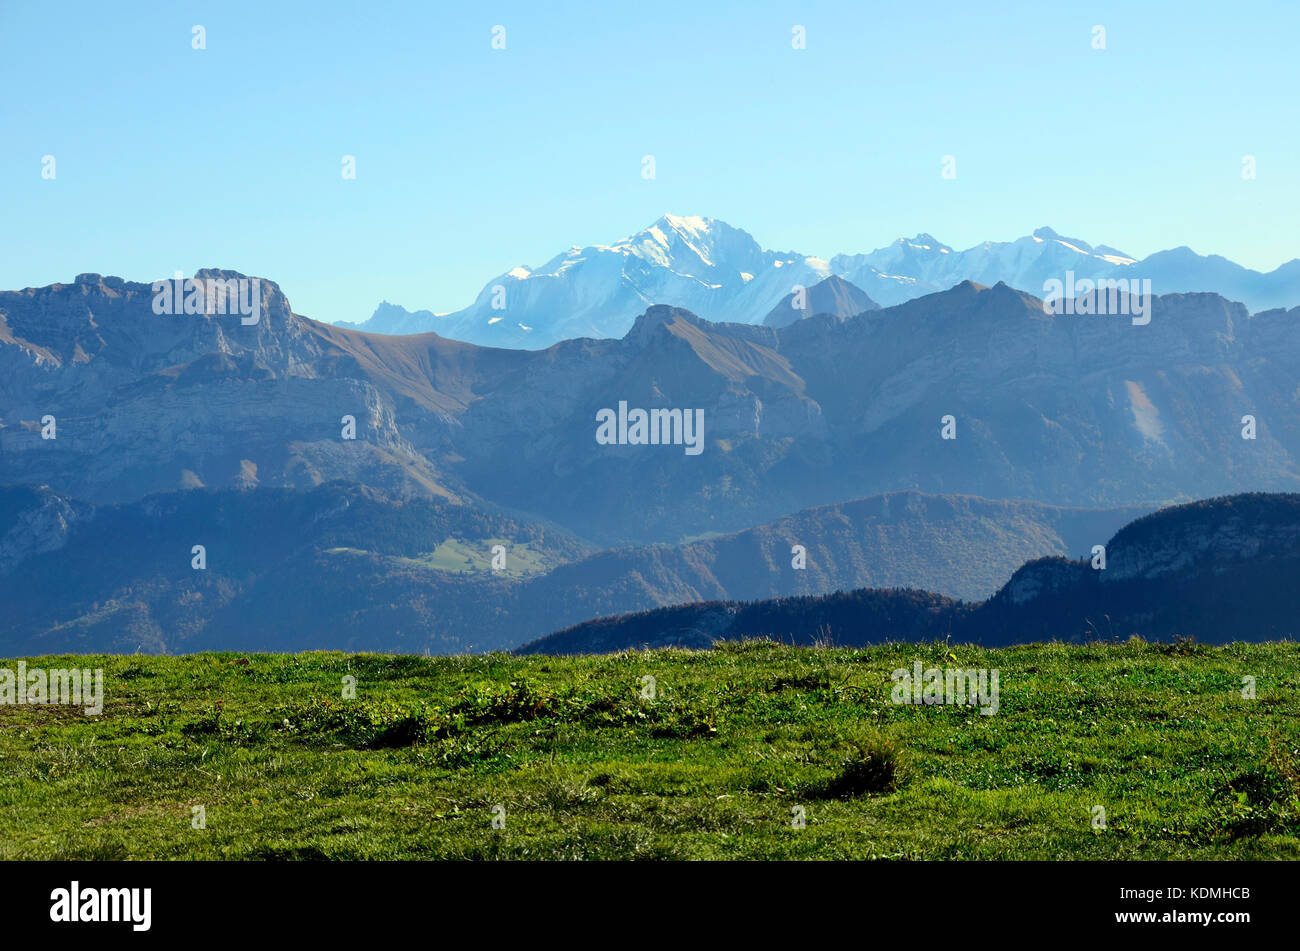 Mont-blanc et le paysage de montagnes de la tournette semnoz près d'annecy, Savoie, France Banque D'Images